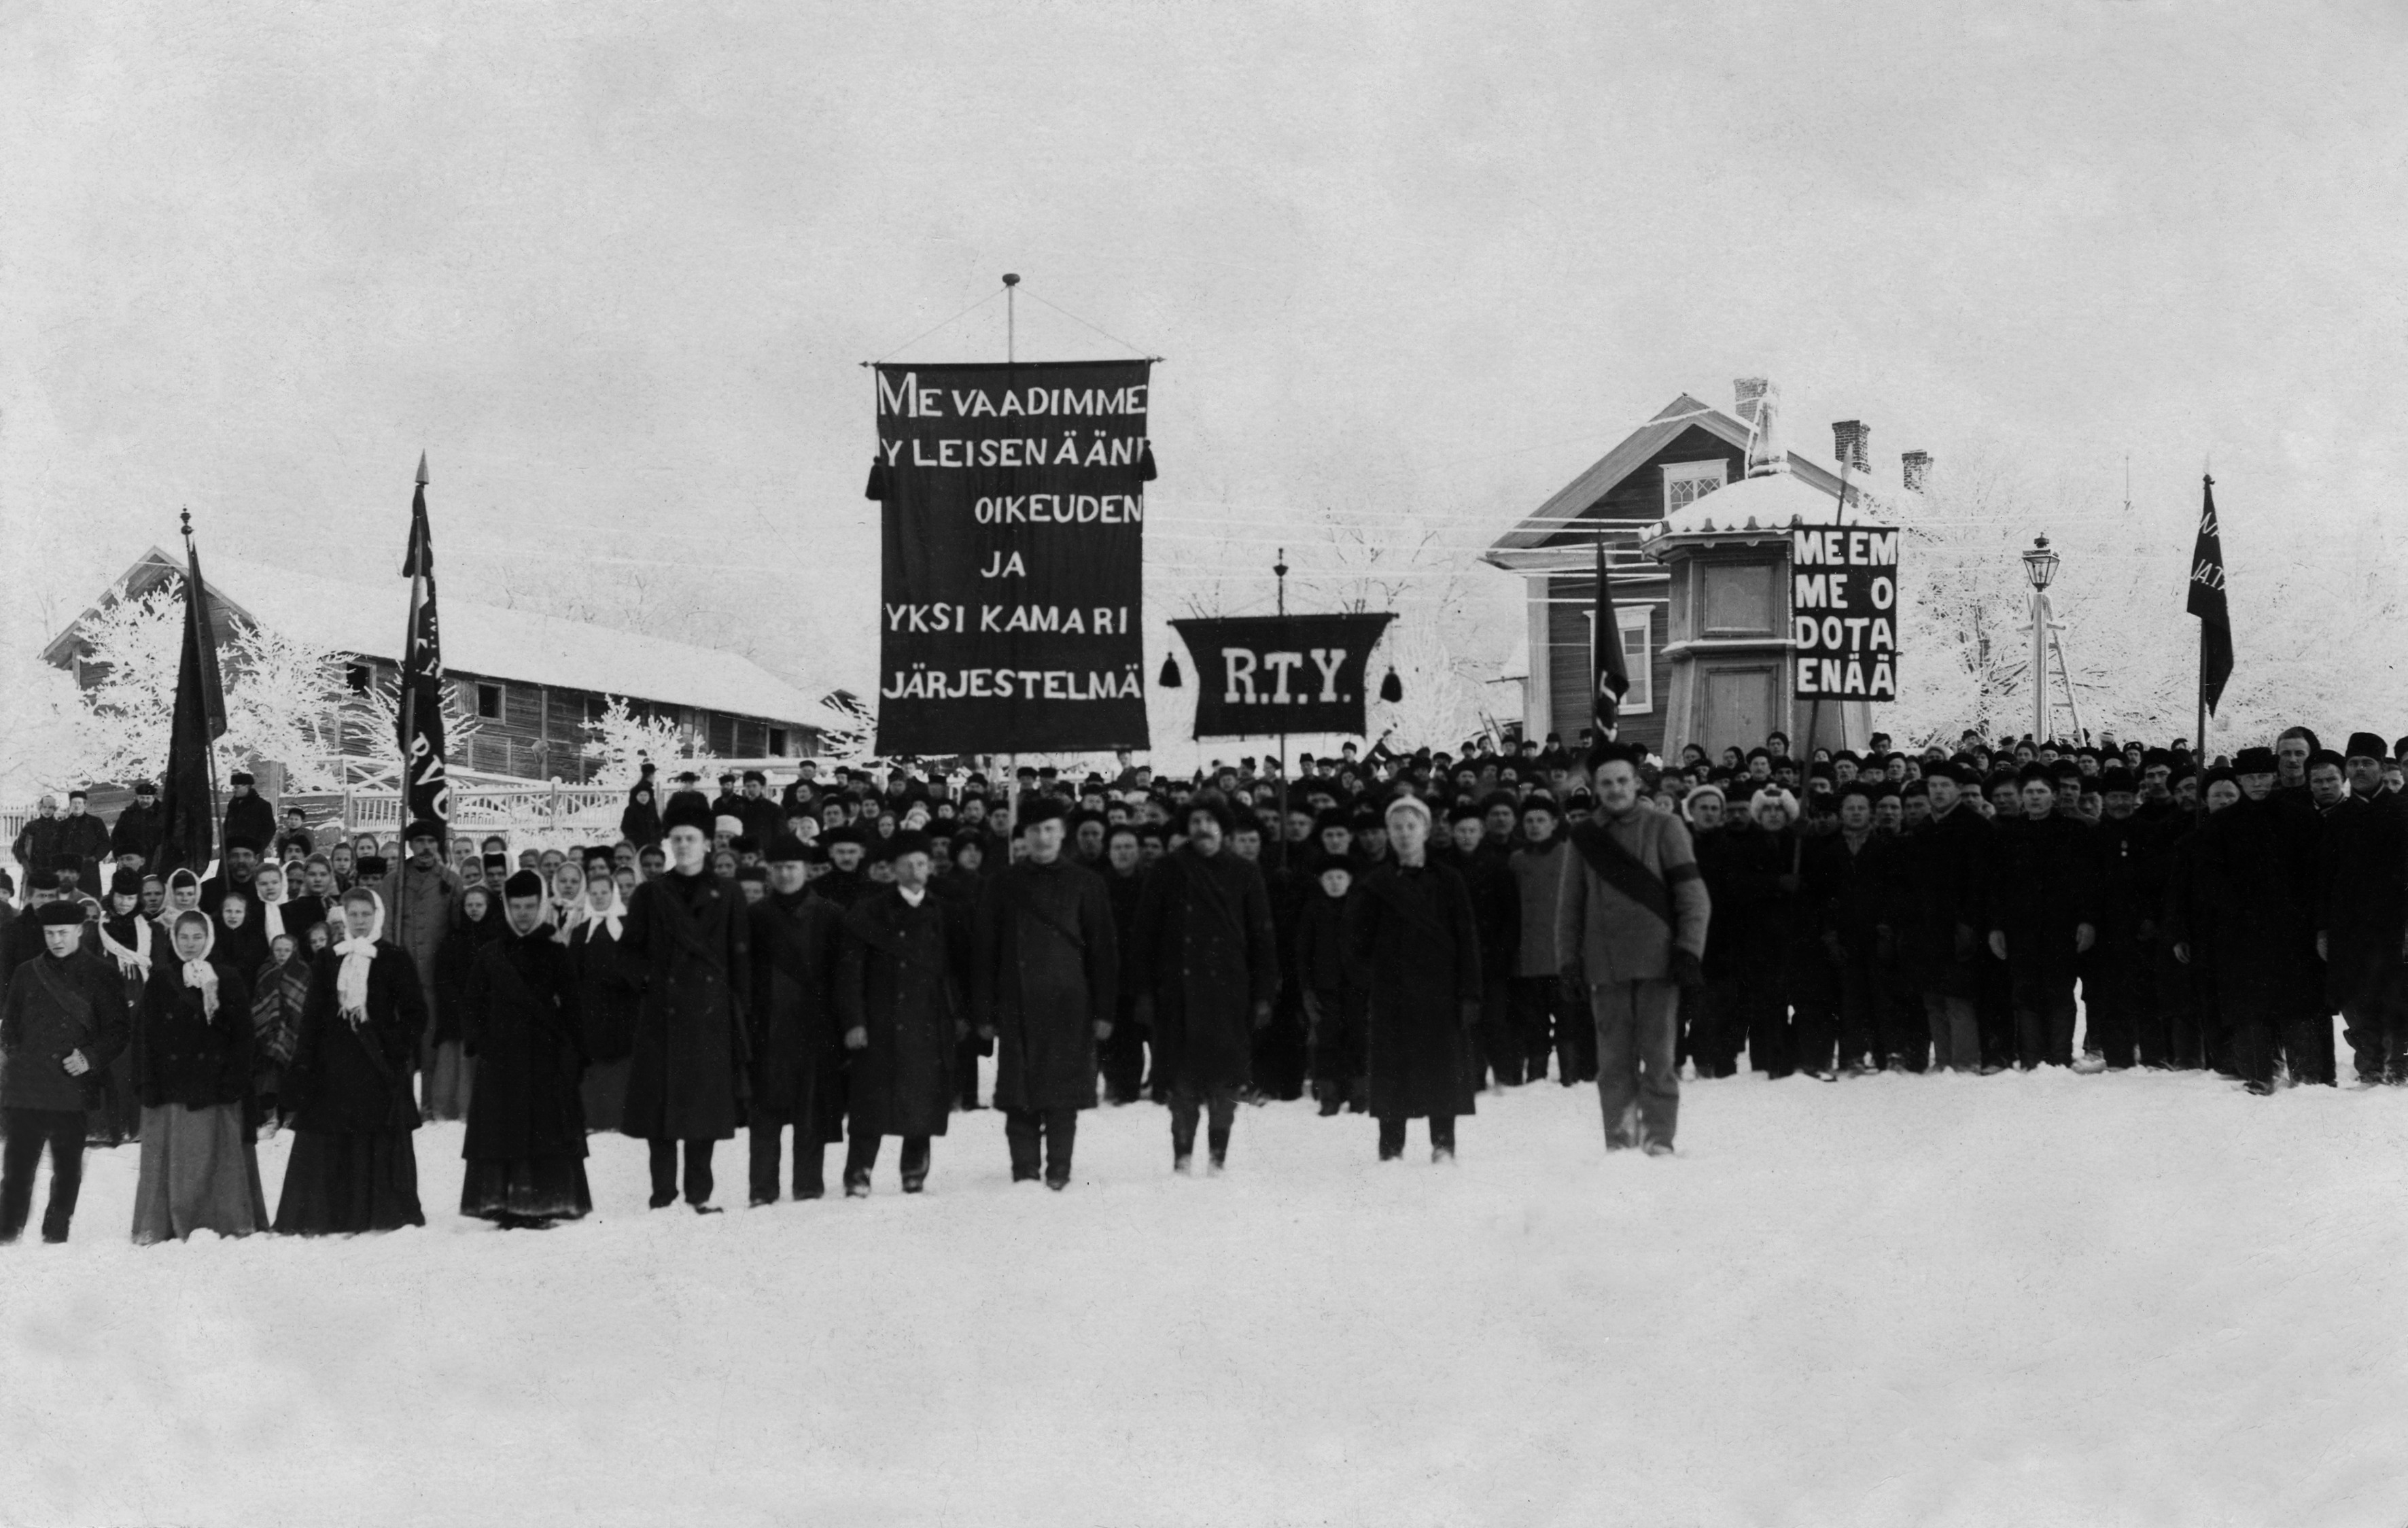 Työväenyhdistyksen mielenosoitus yleisen ja yhtäläisen äänioikeuden puolesta, mahdollisesti Suurlakon aikana. Kuva julkaistu Elanto -lehdessä ilmeisesti 1957.